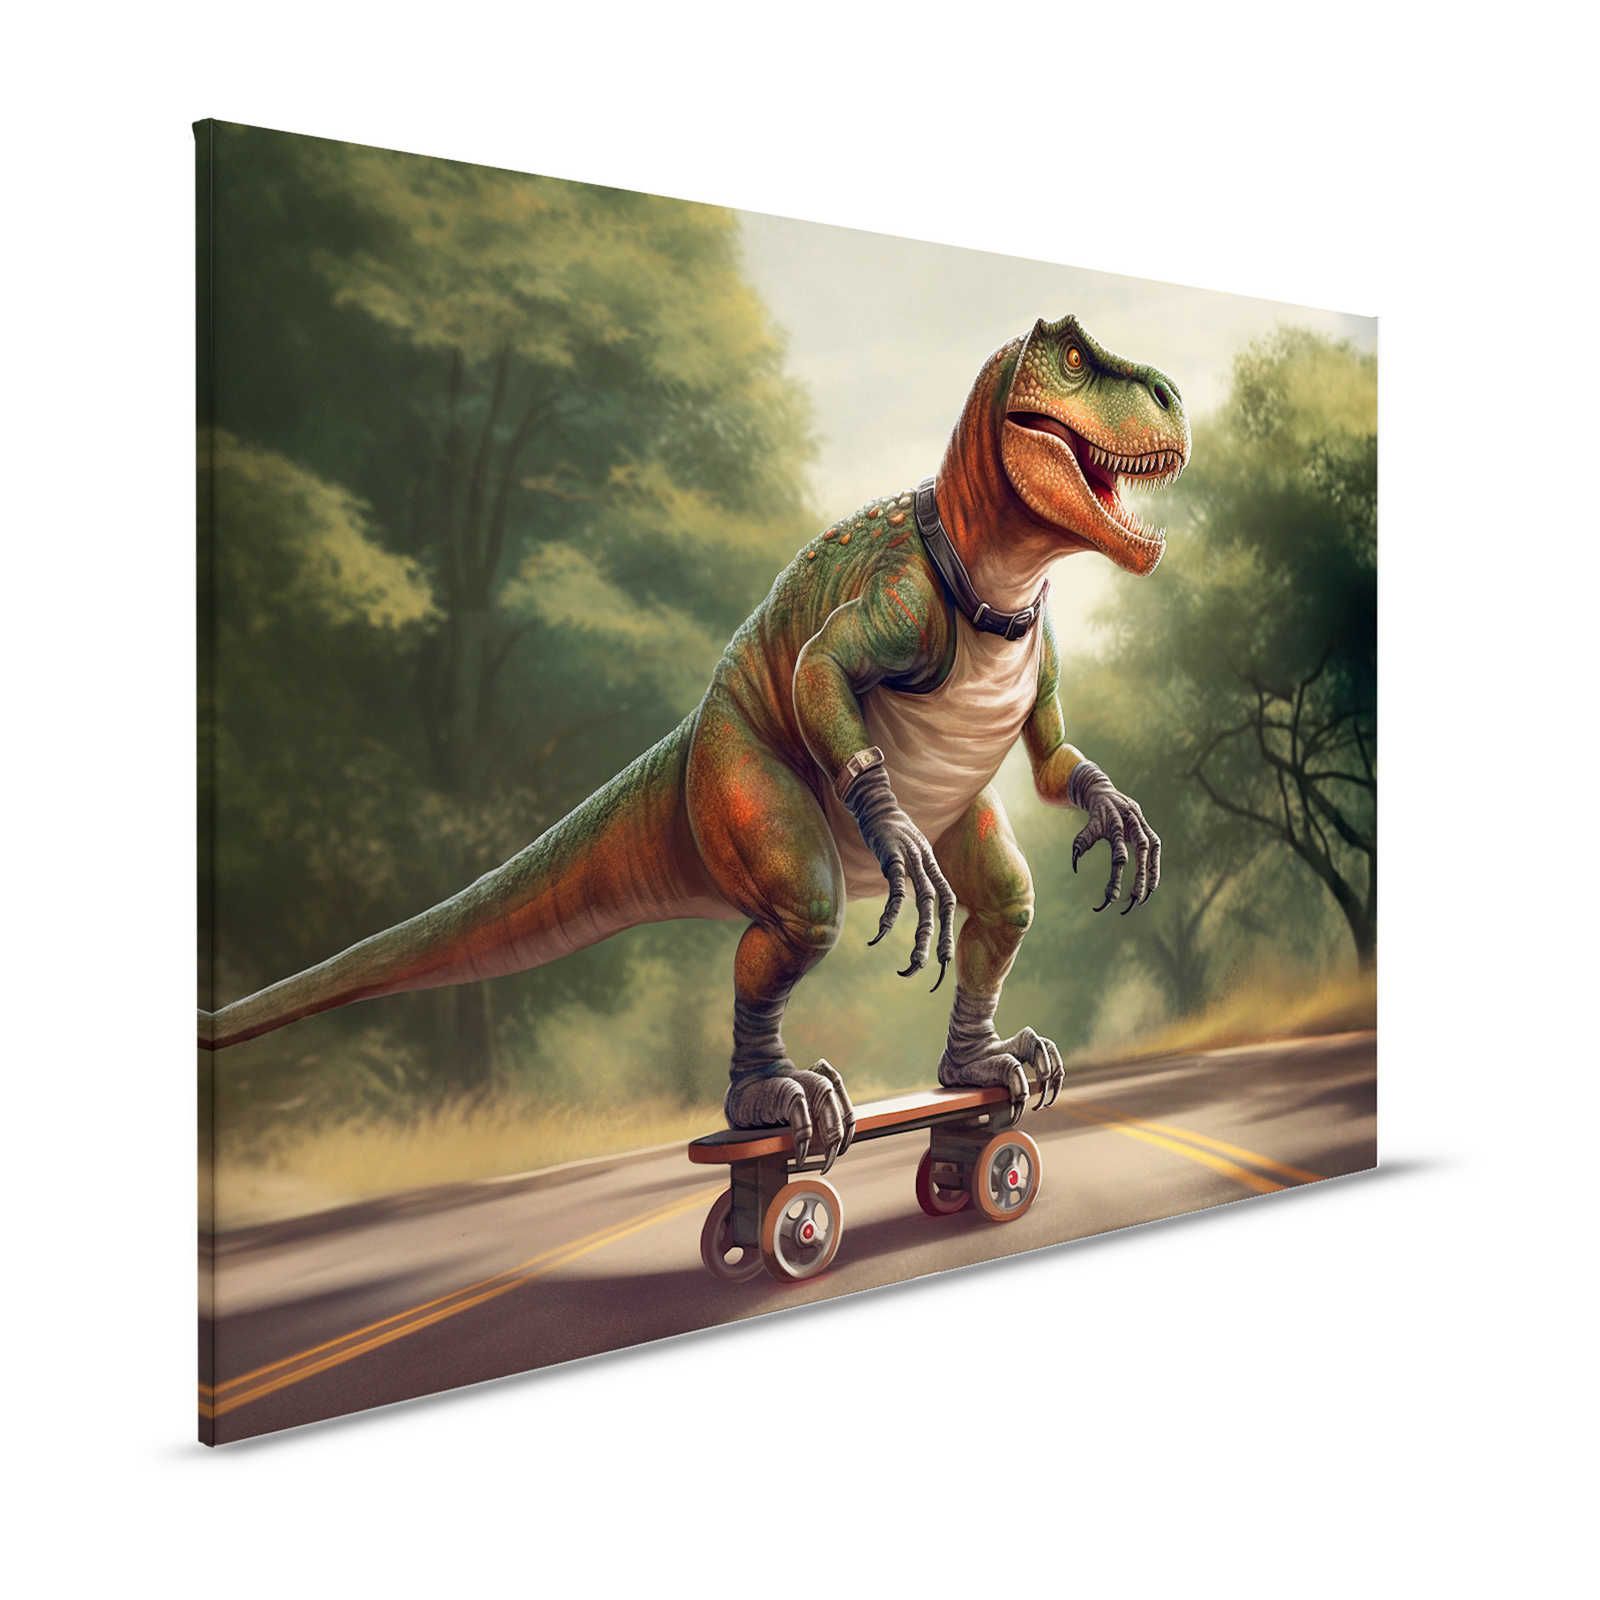 KI Canvas schilderij »skating t-rex« - 120 cm x 80 cm
